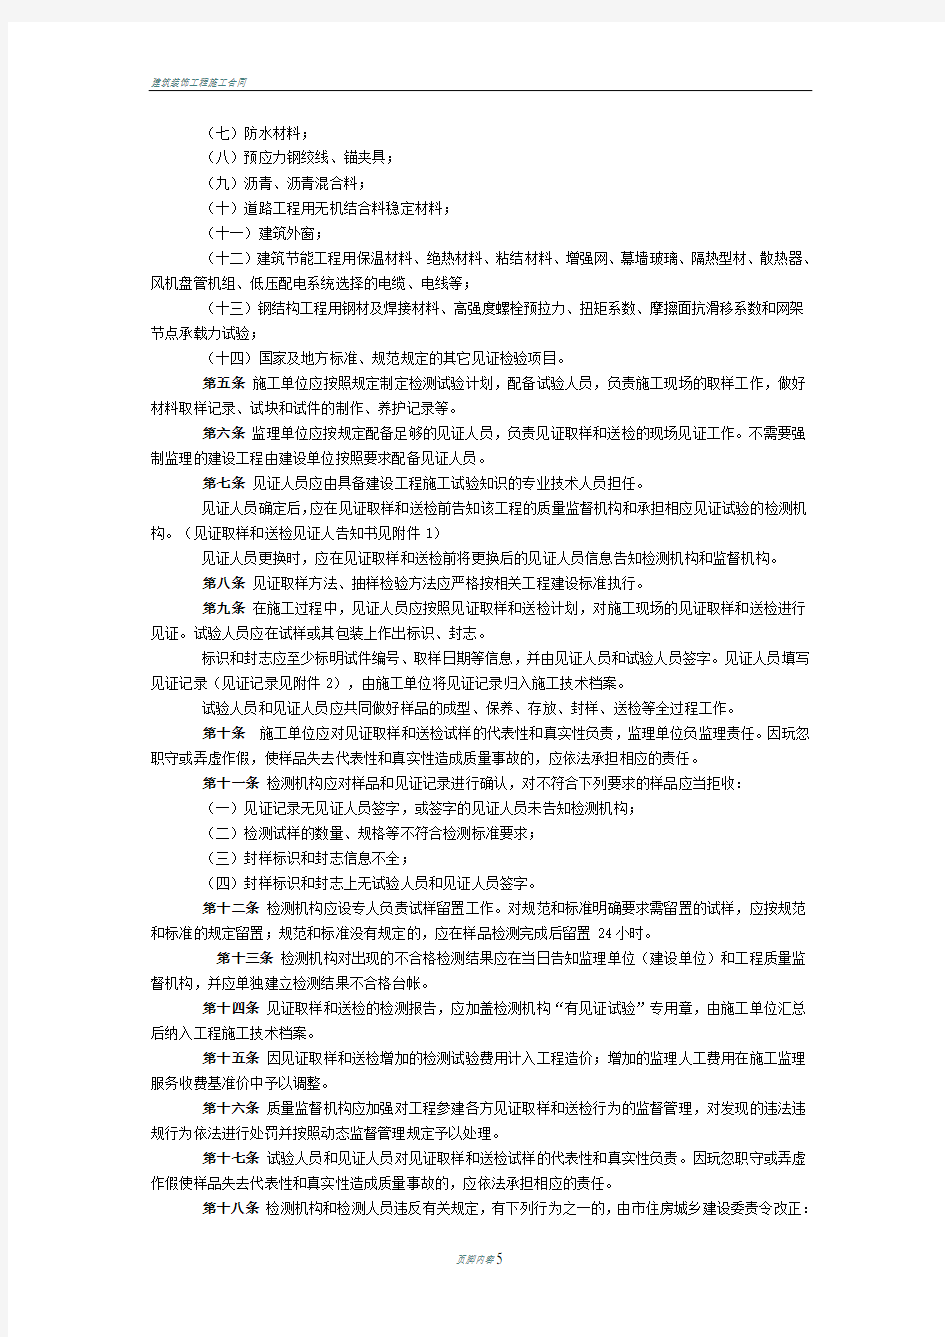 北京市建设工程见证取样和送检管理规定(试行)